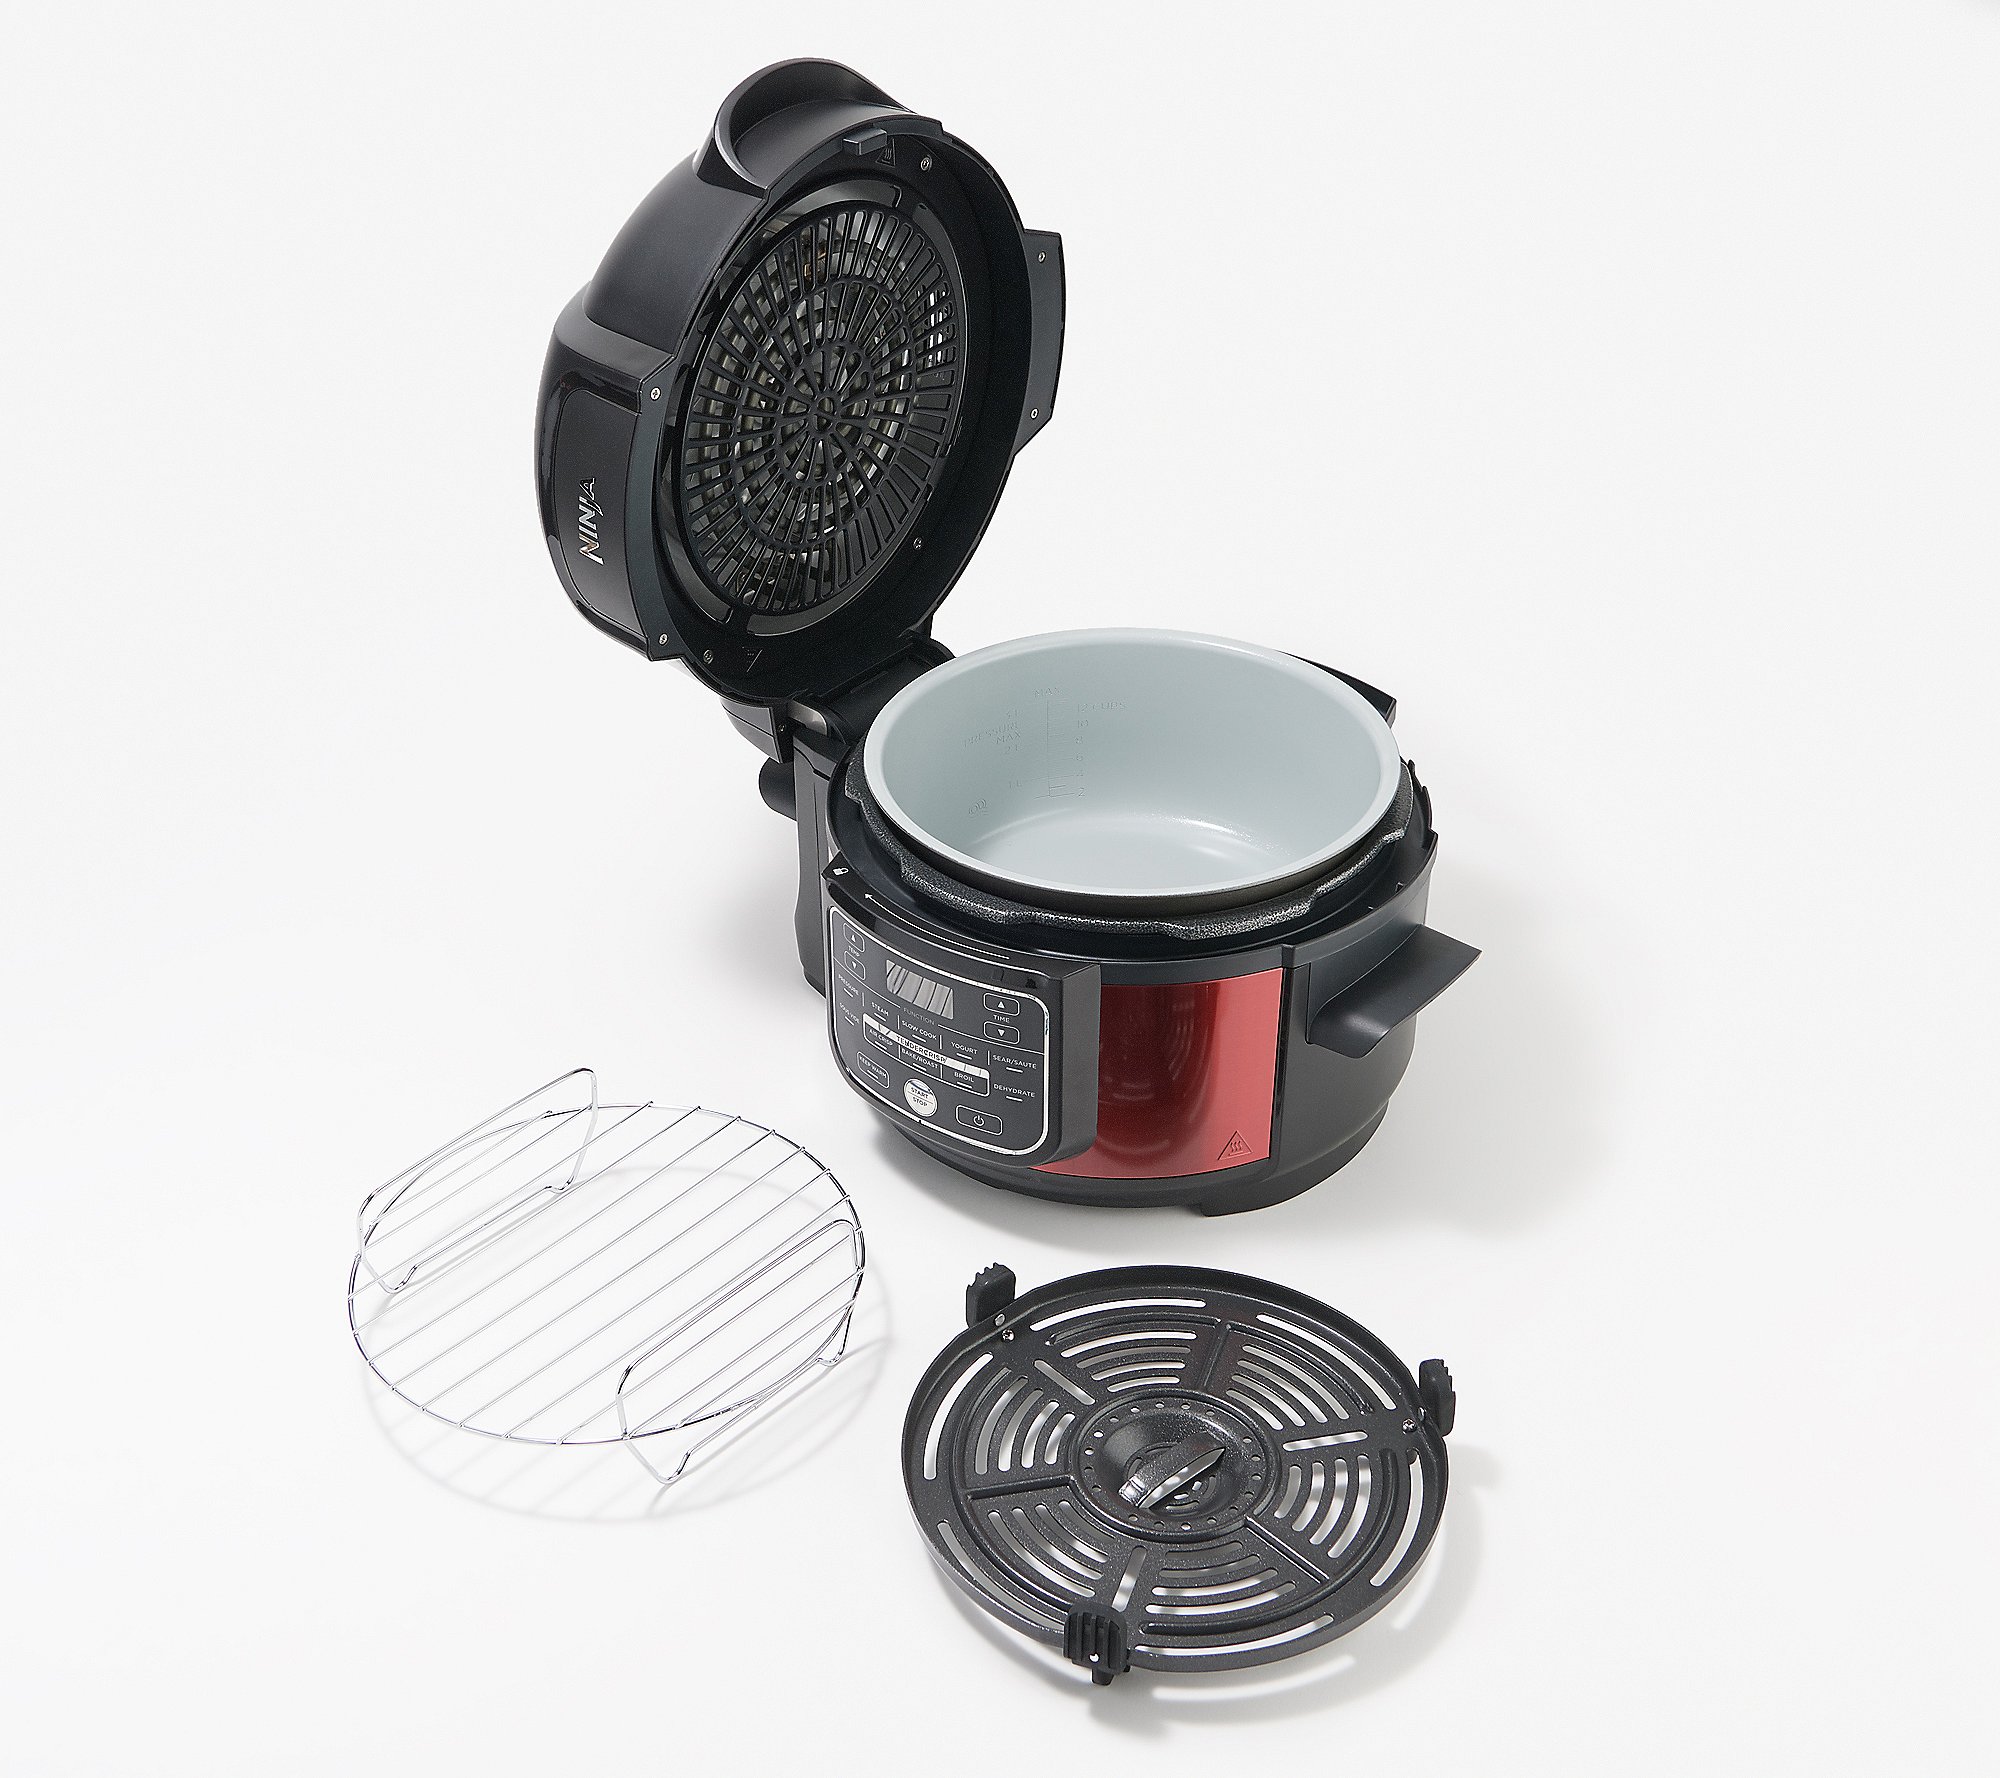 Ninja Foodi 6.5-quart Pressure Cooker with TenderCrisp and Dehydrate